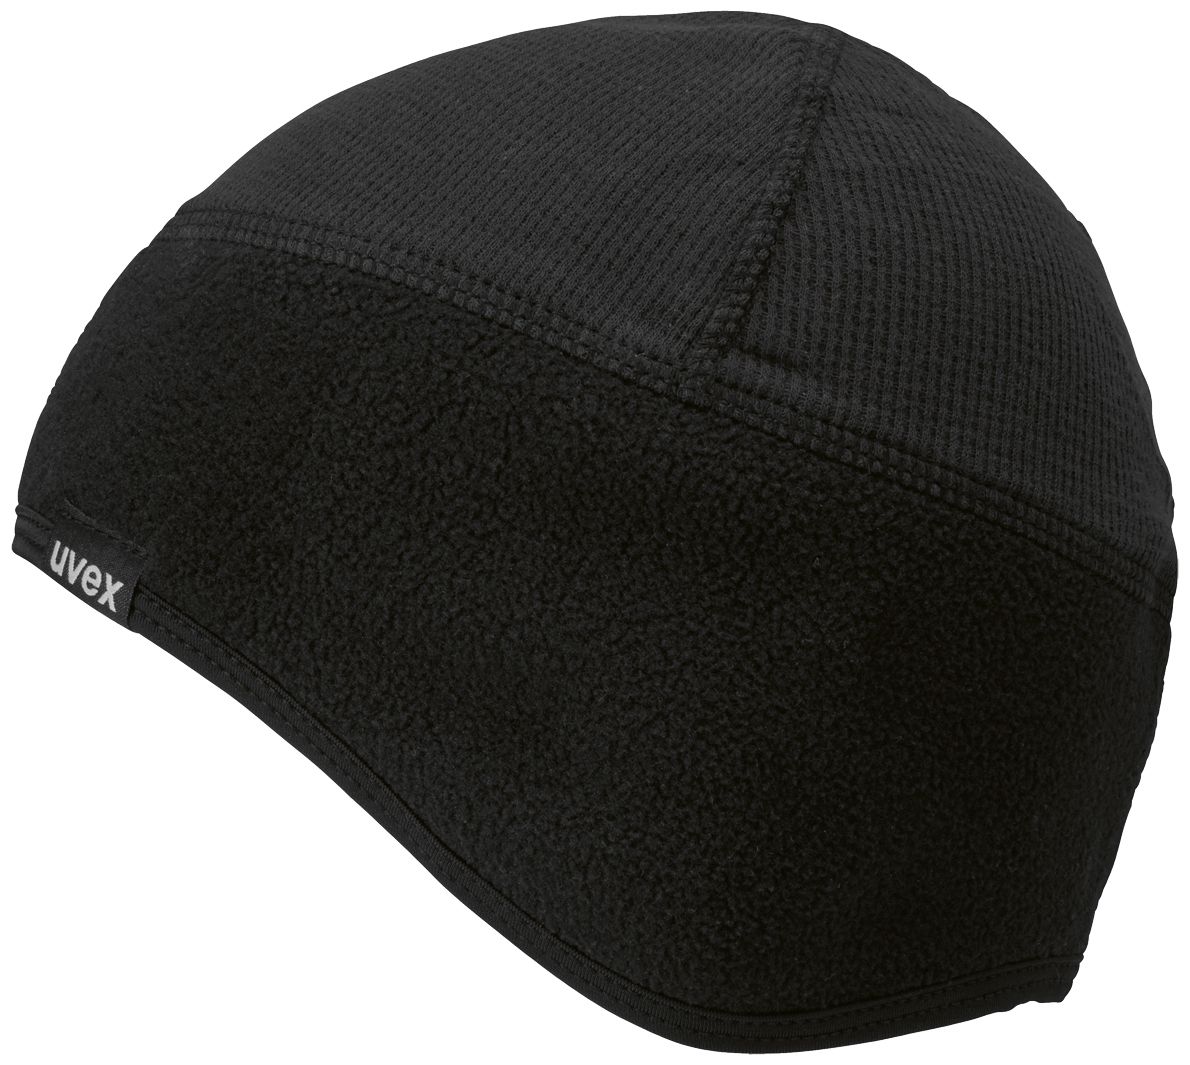 uvex Wintermütze - Warme Helm-Mütze für Frauen & Männer - Schwarz - S/M